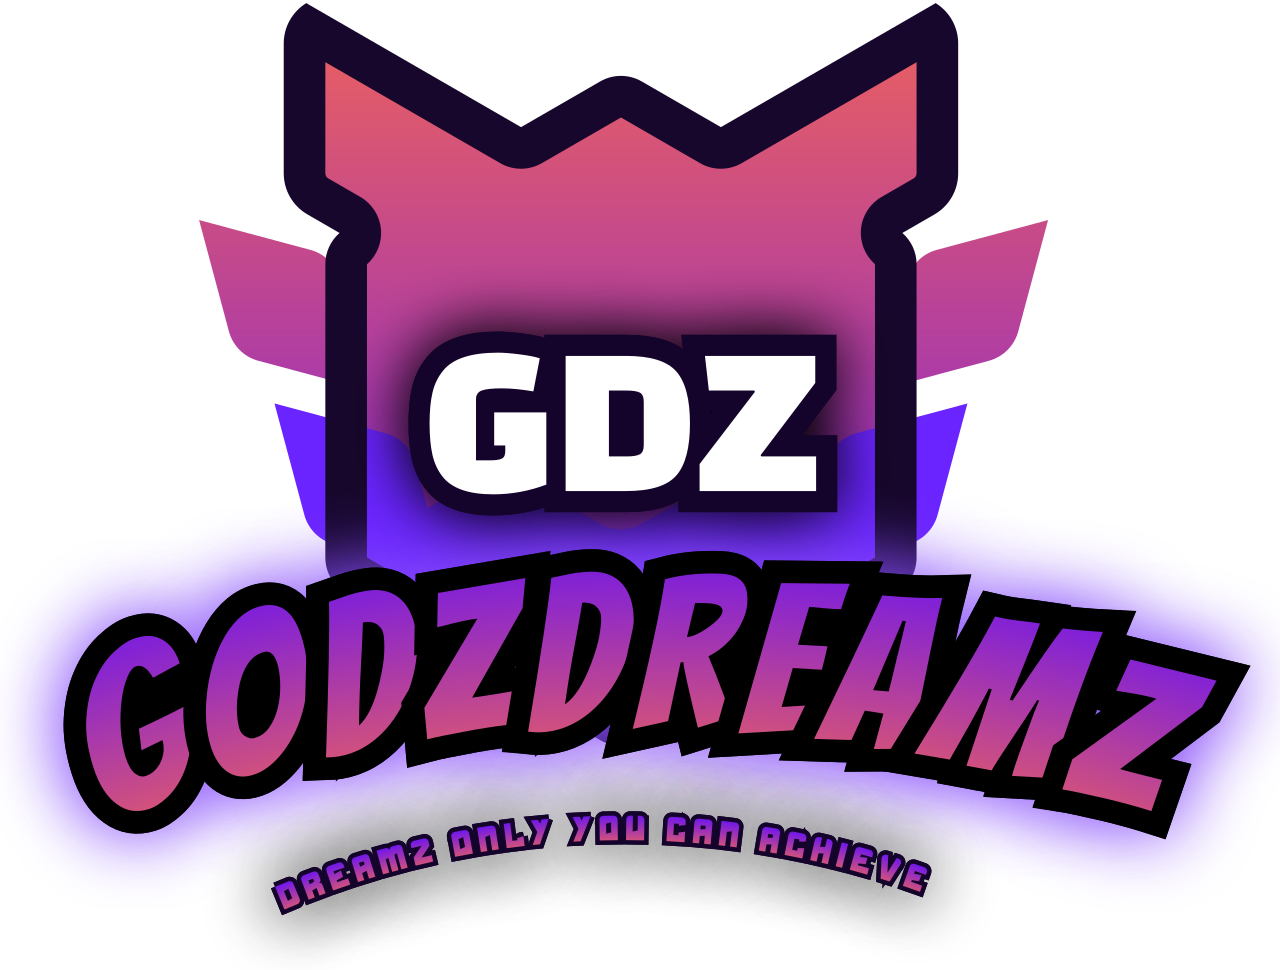 GODzDREAMz's logo